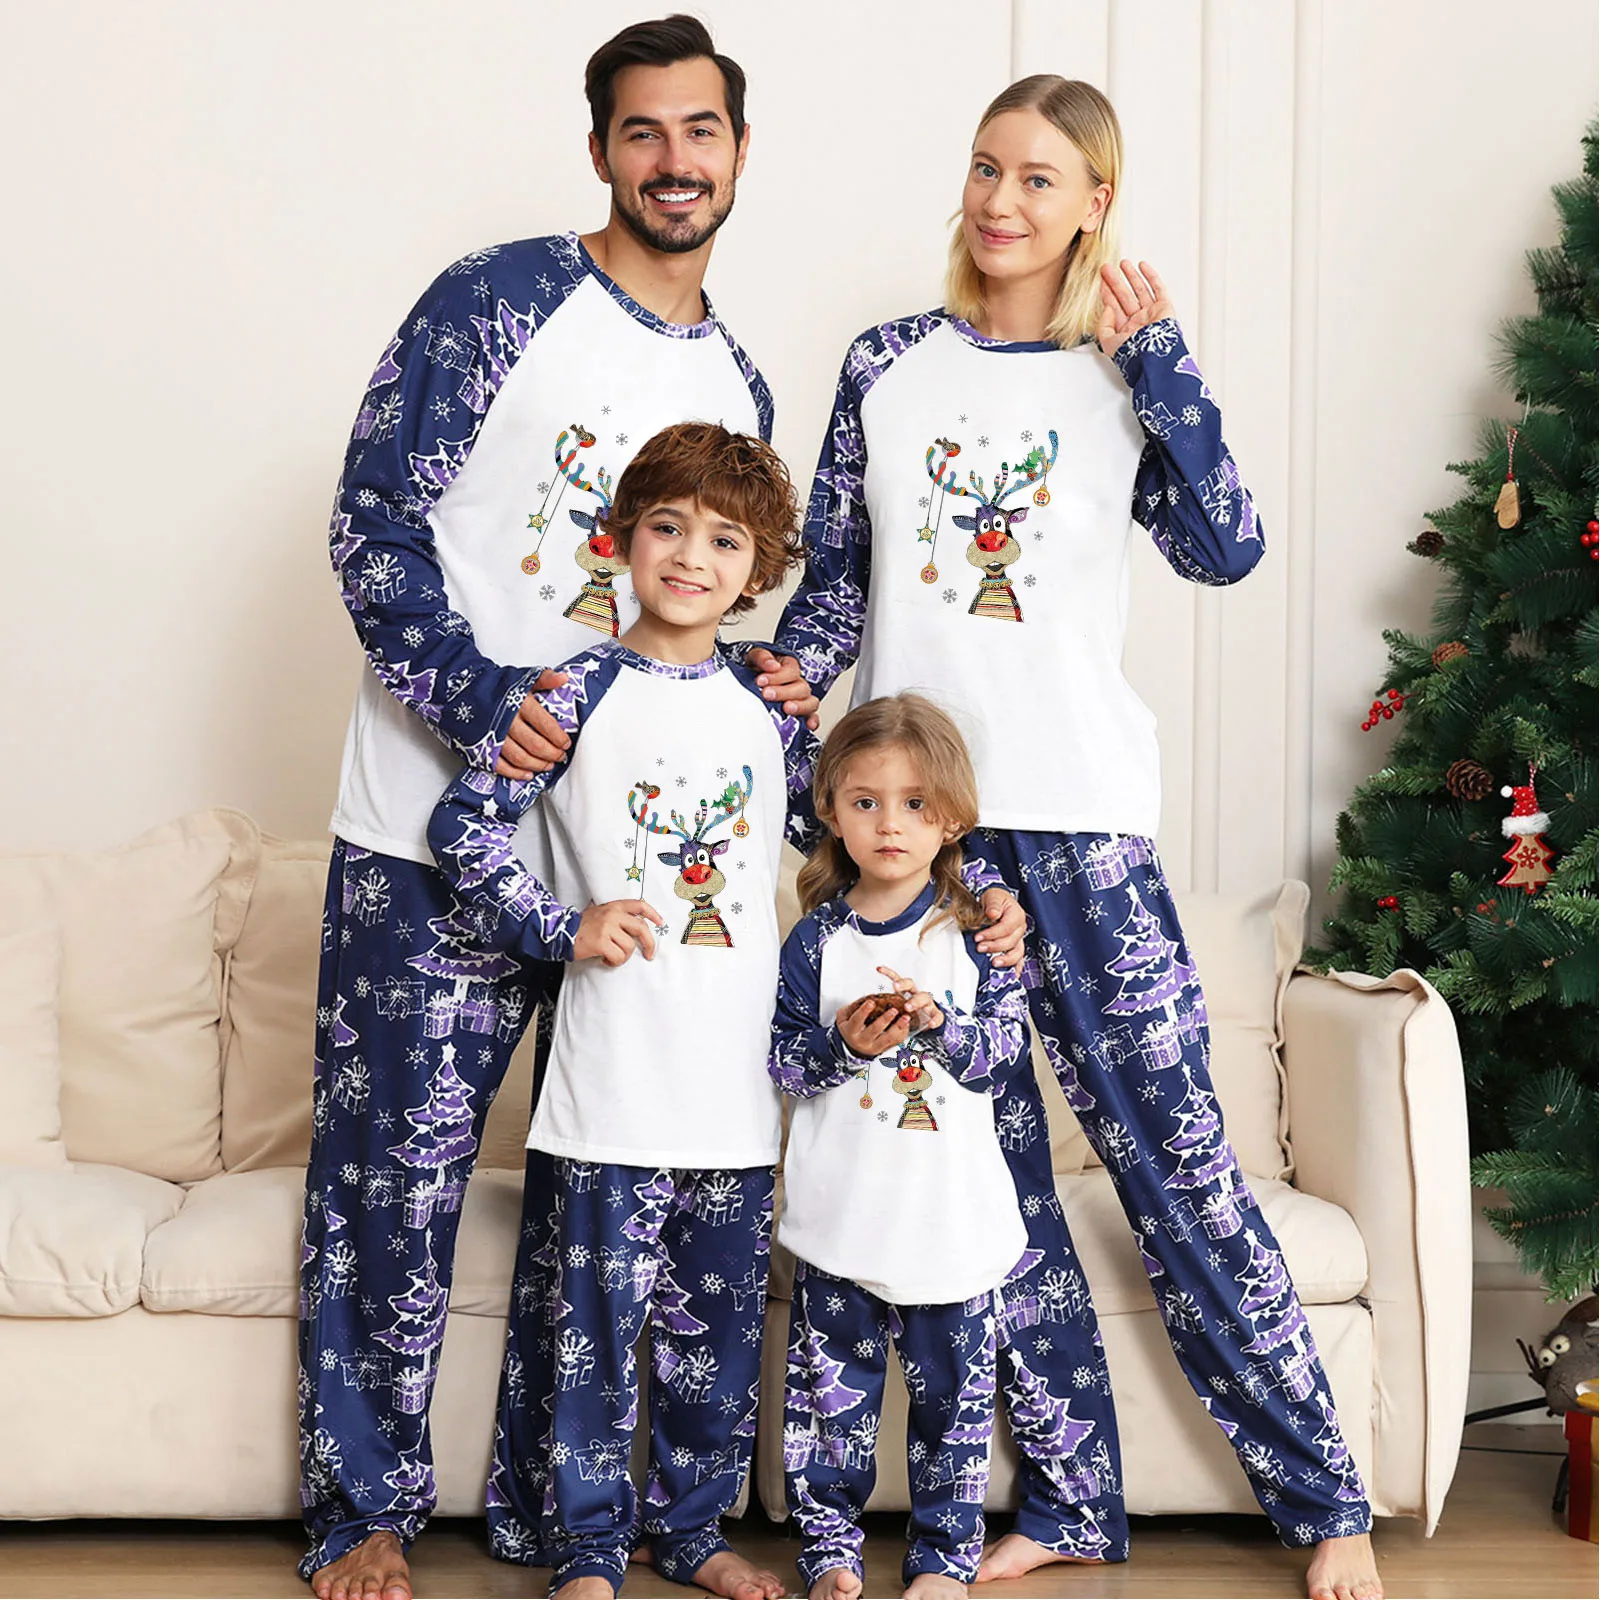 Aangepaste Pyjama Vrolijke Kerst Pjs Familie Matching Herten Print Pyjama Set Herten Pyjama Gepersonaliseerde Pyjama Kerst familie geschenken Kleding Gender-neutrale kleding volwassenen Pyjamas & Badjassen Pyjama 